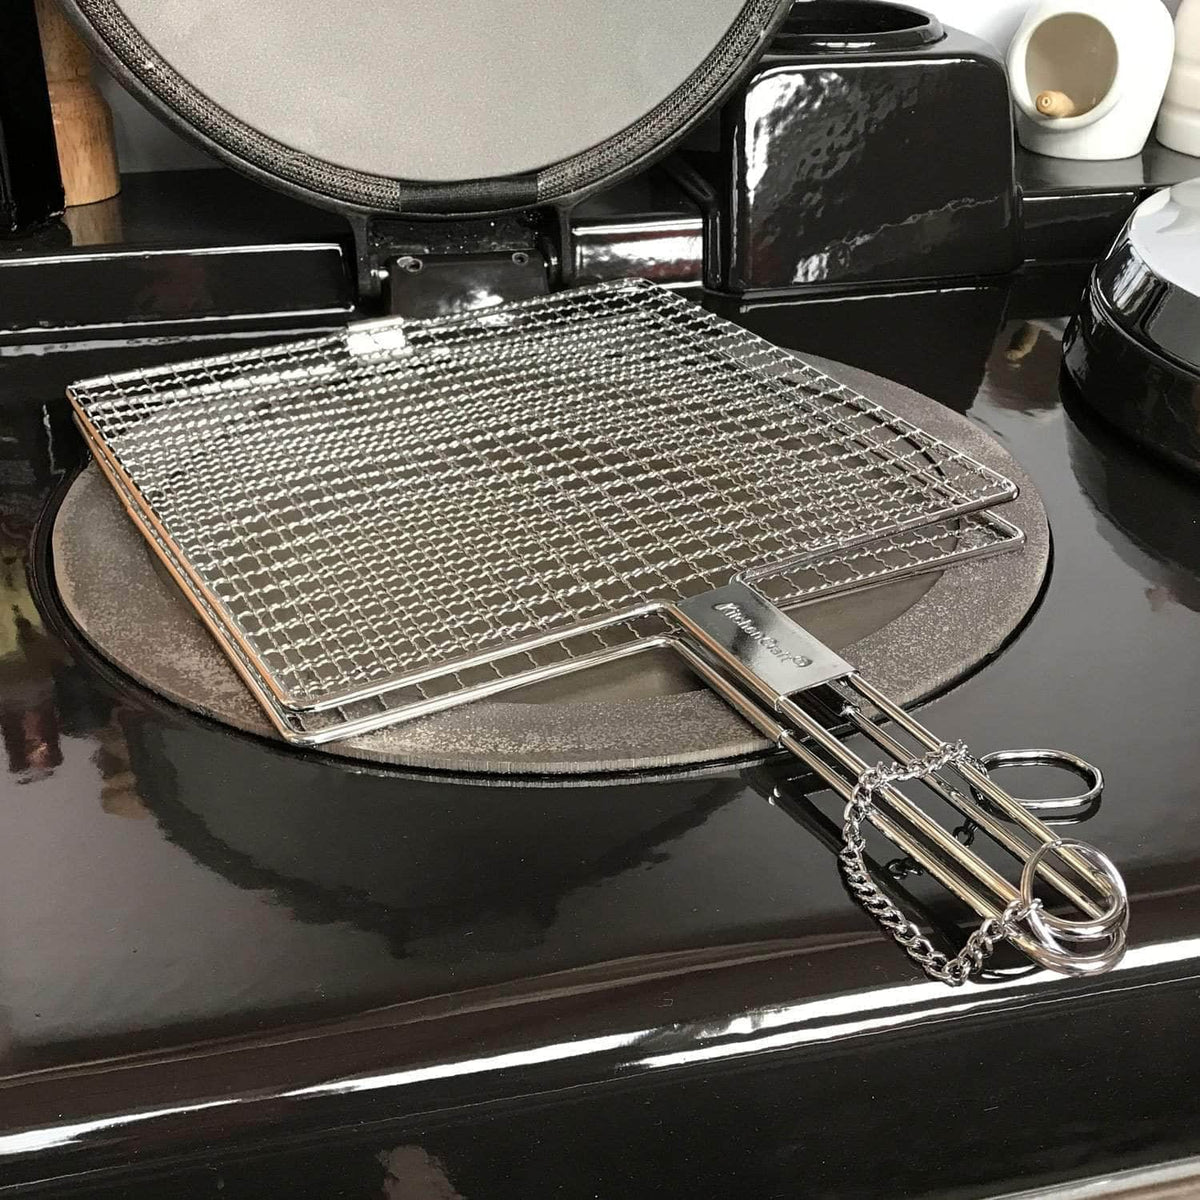 Toaster / toasting rack